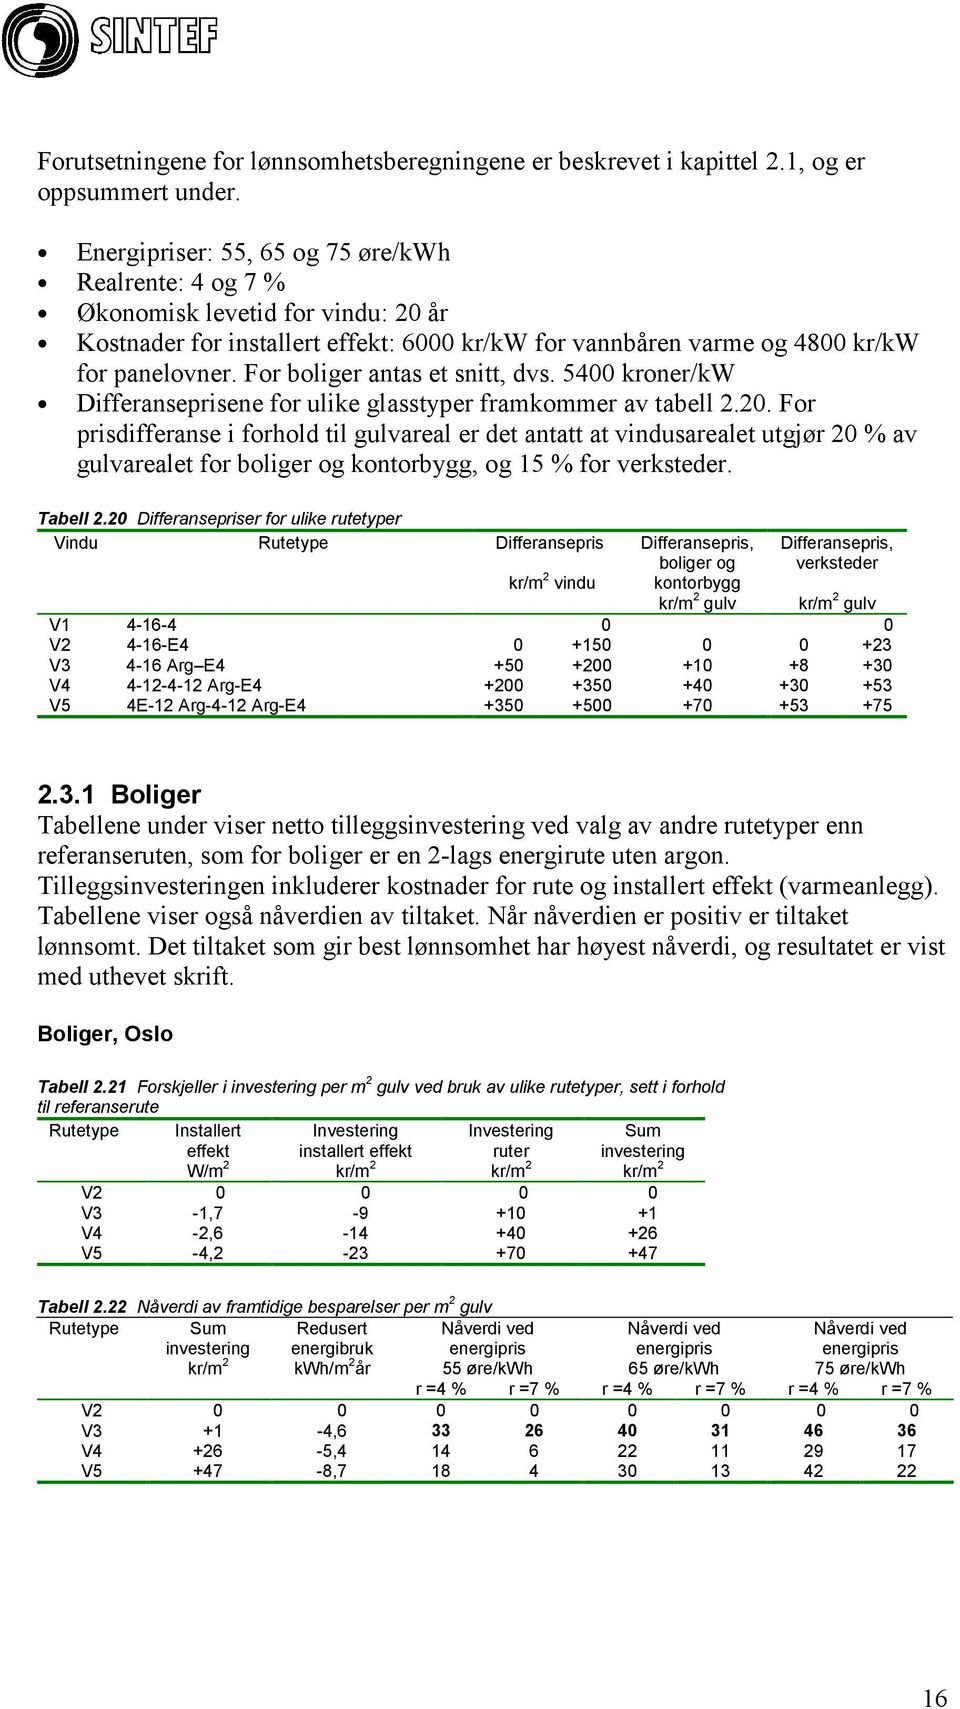 For boliger antas et snitt, dvs. 5400 kroner/kw prisene for ulike glasstyper framkommer av tabell 2.20.